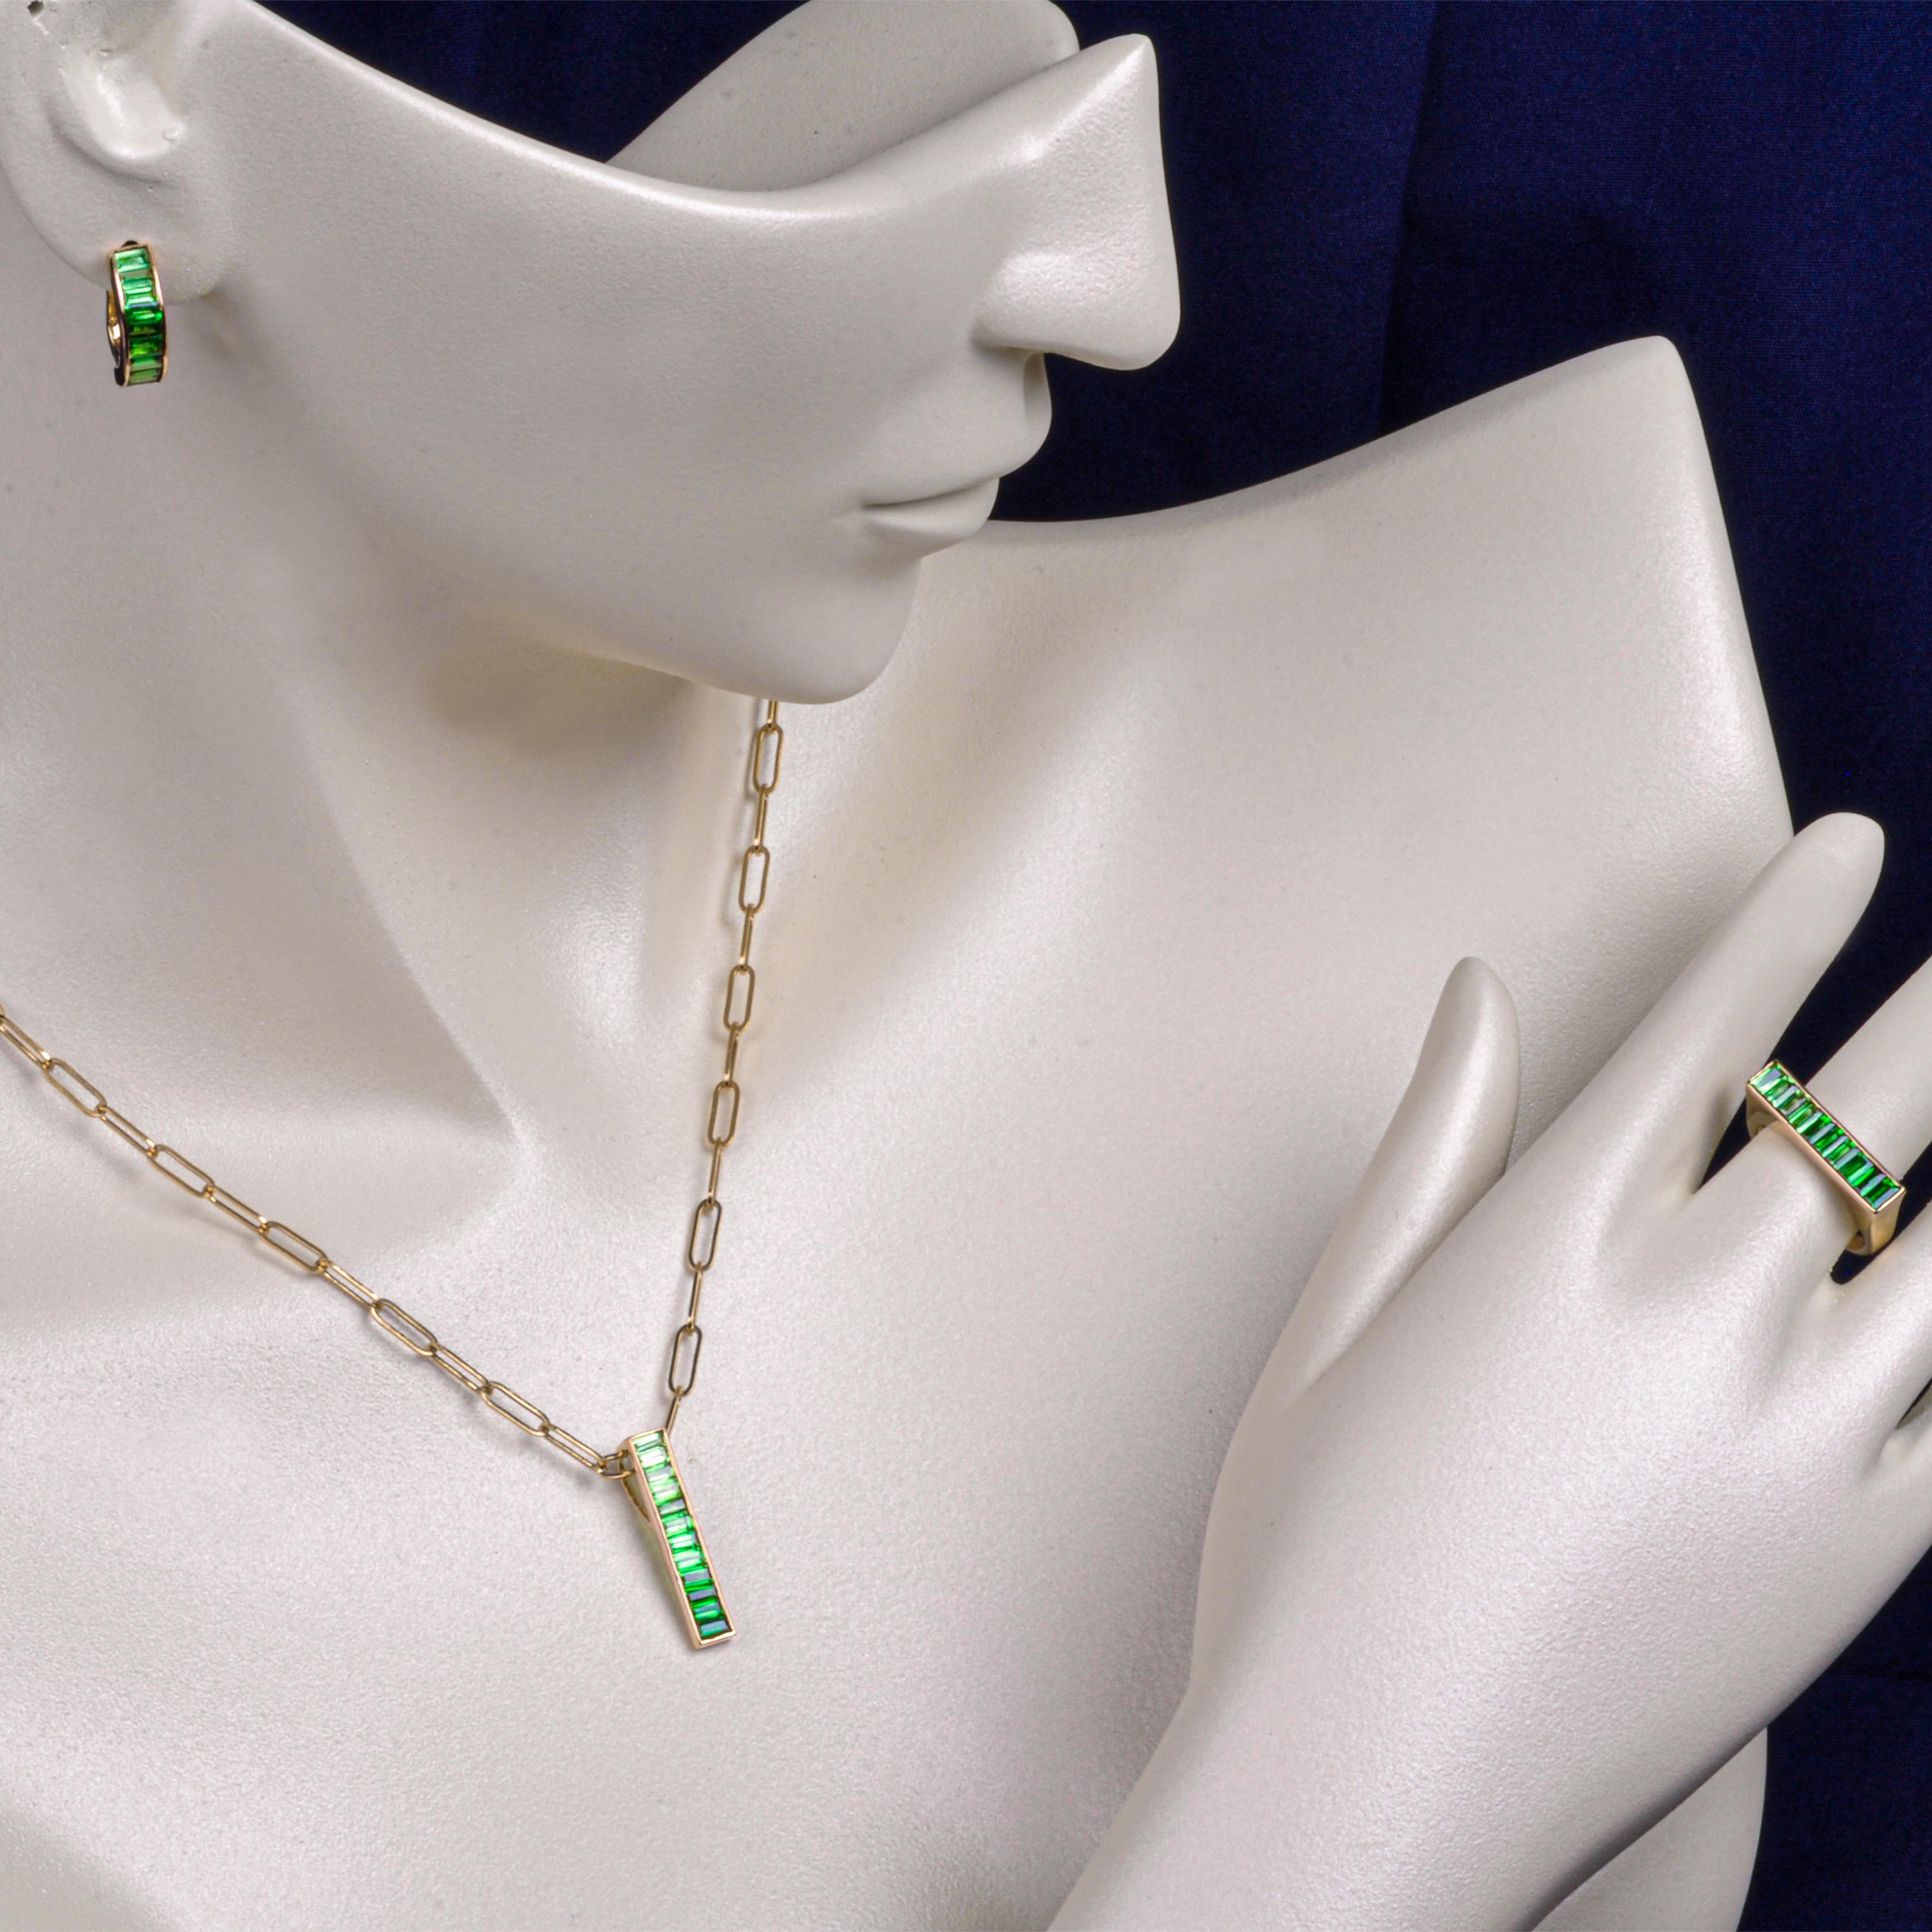 18K Gelbgold Farbverlauf Tsavorit Granat Anhänger Halskette Ohrring Ring Set

Fügen Sie Ihrem Schmuckkästchen etwas Besonderes hinzu mit dem natürlichen grünen Tsavorit-Granat-Anhänger-Ohrringe-Ring-Set.  Dieses klassische, lineare Design aus